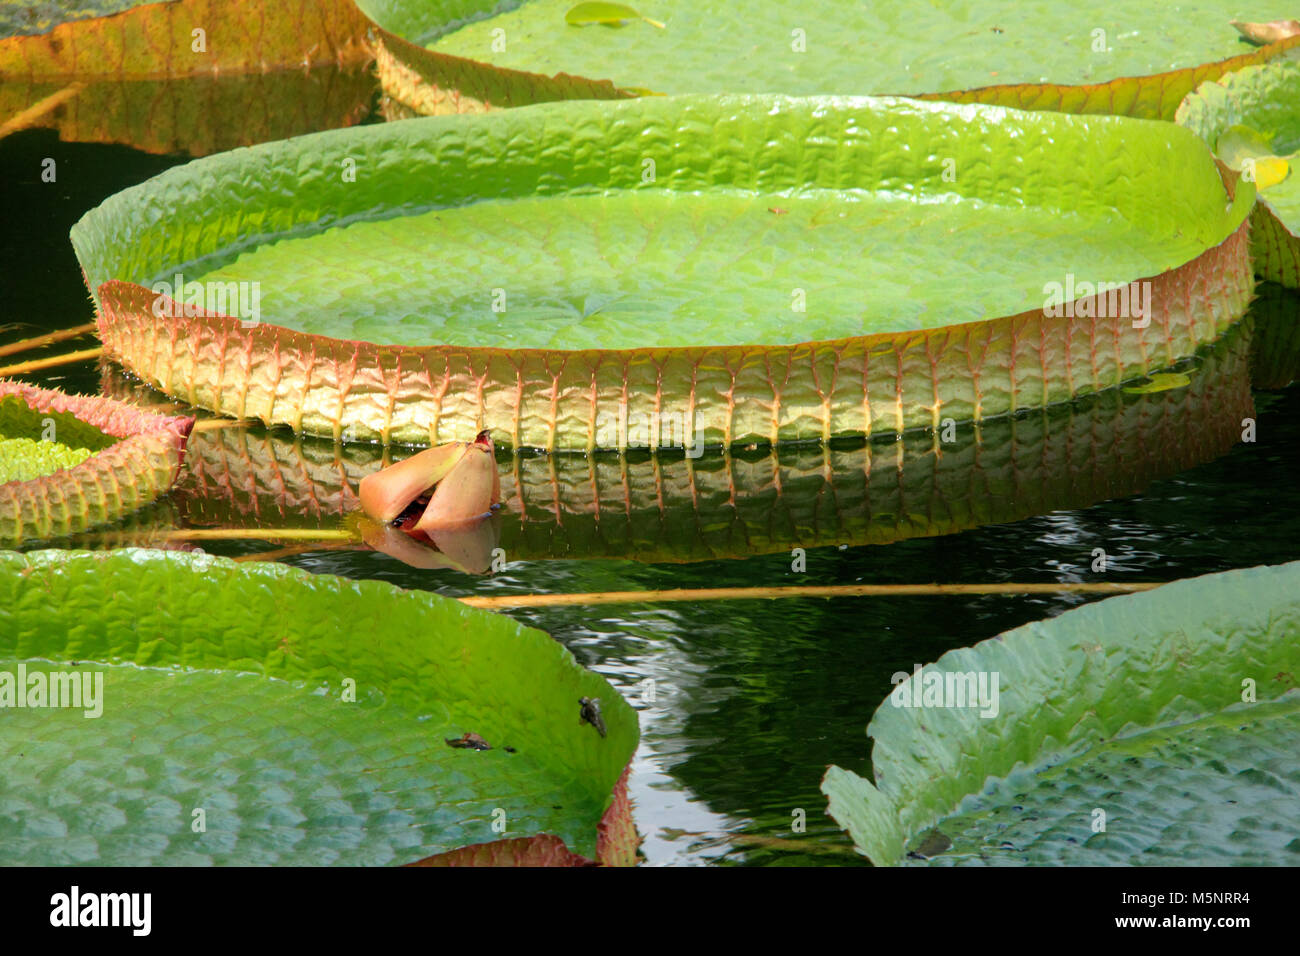 Victoria cruziana aquatische Wasser Pflanze mit riesigen Blättern Pantanal Brasilien Stockfoto